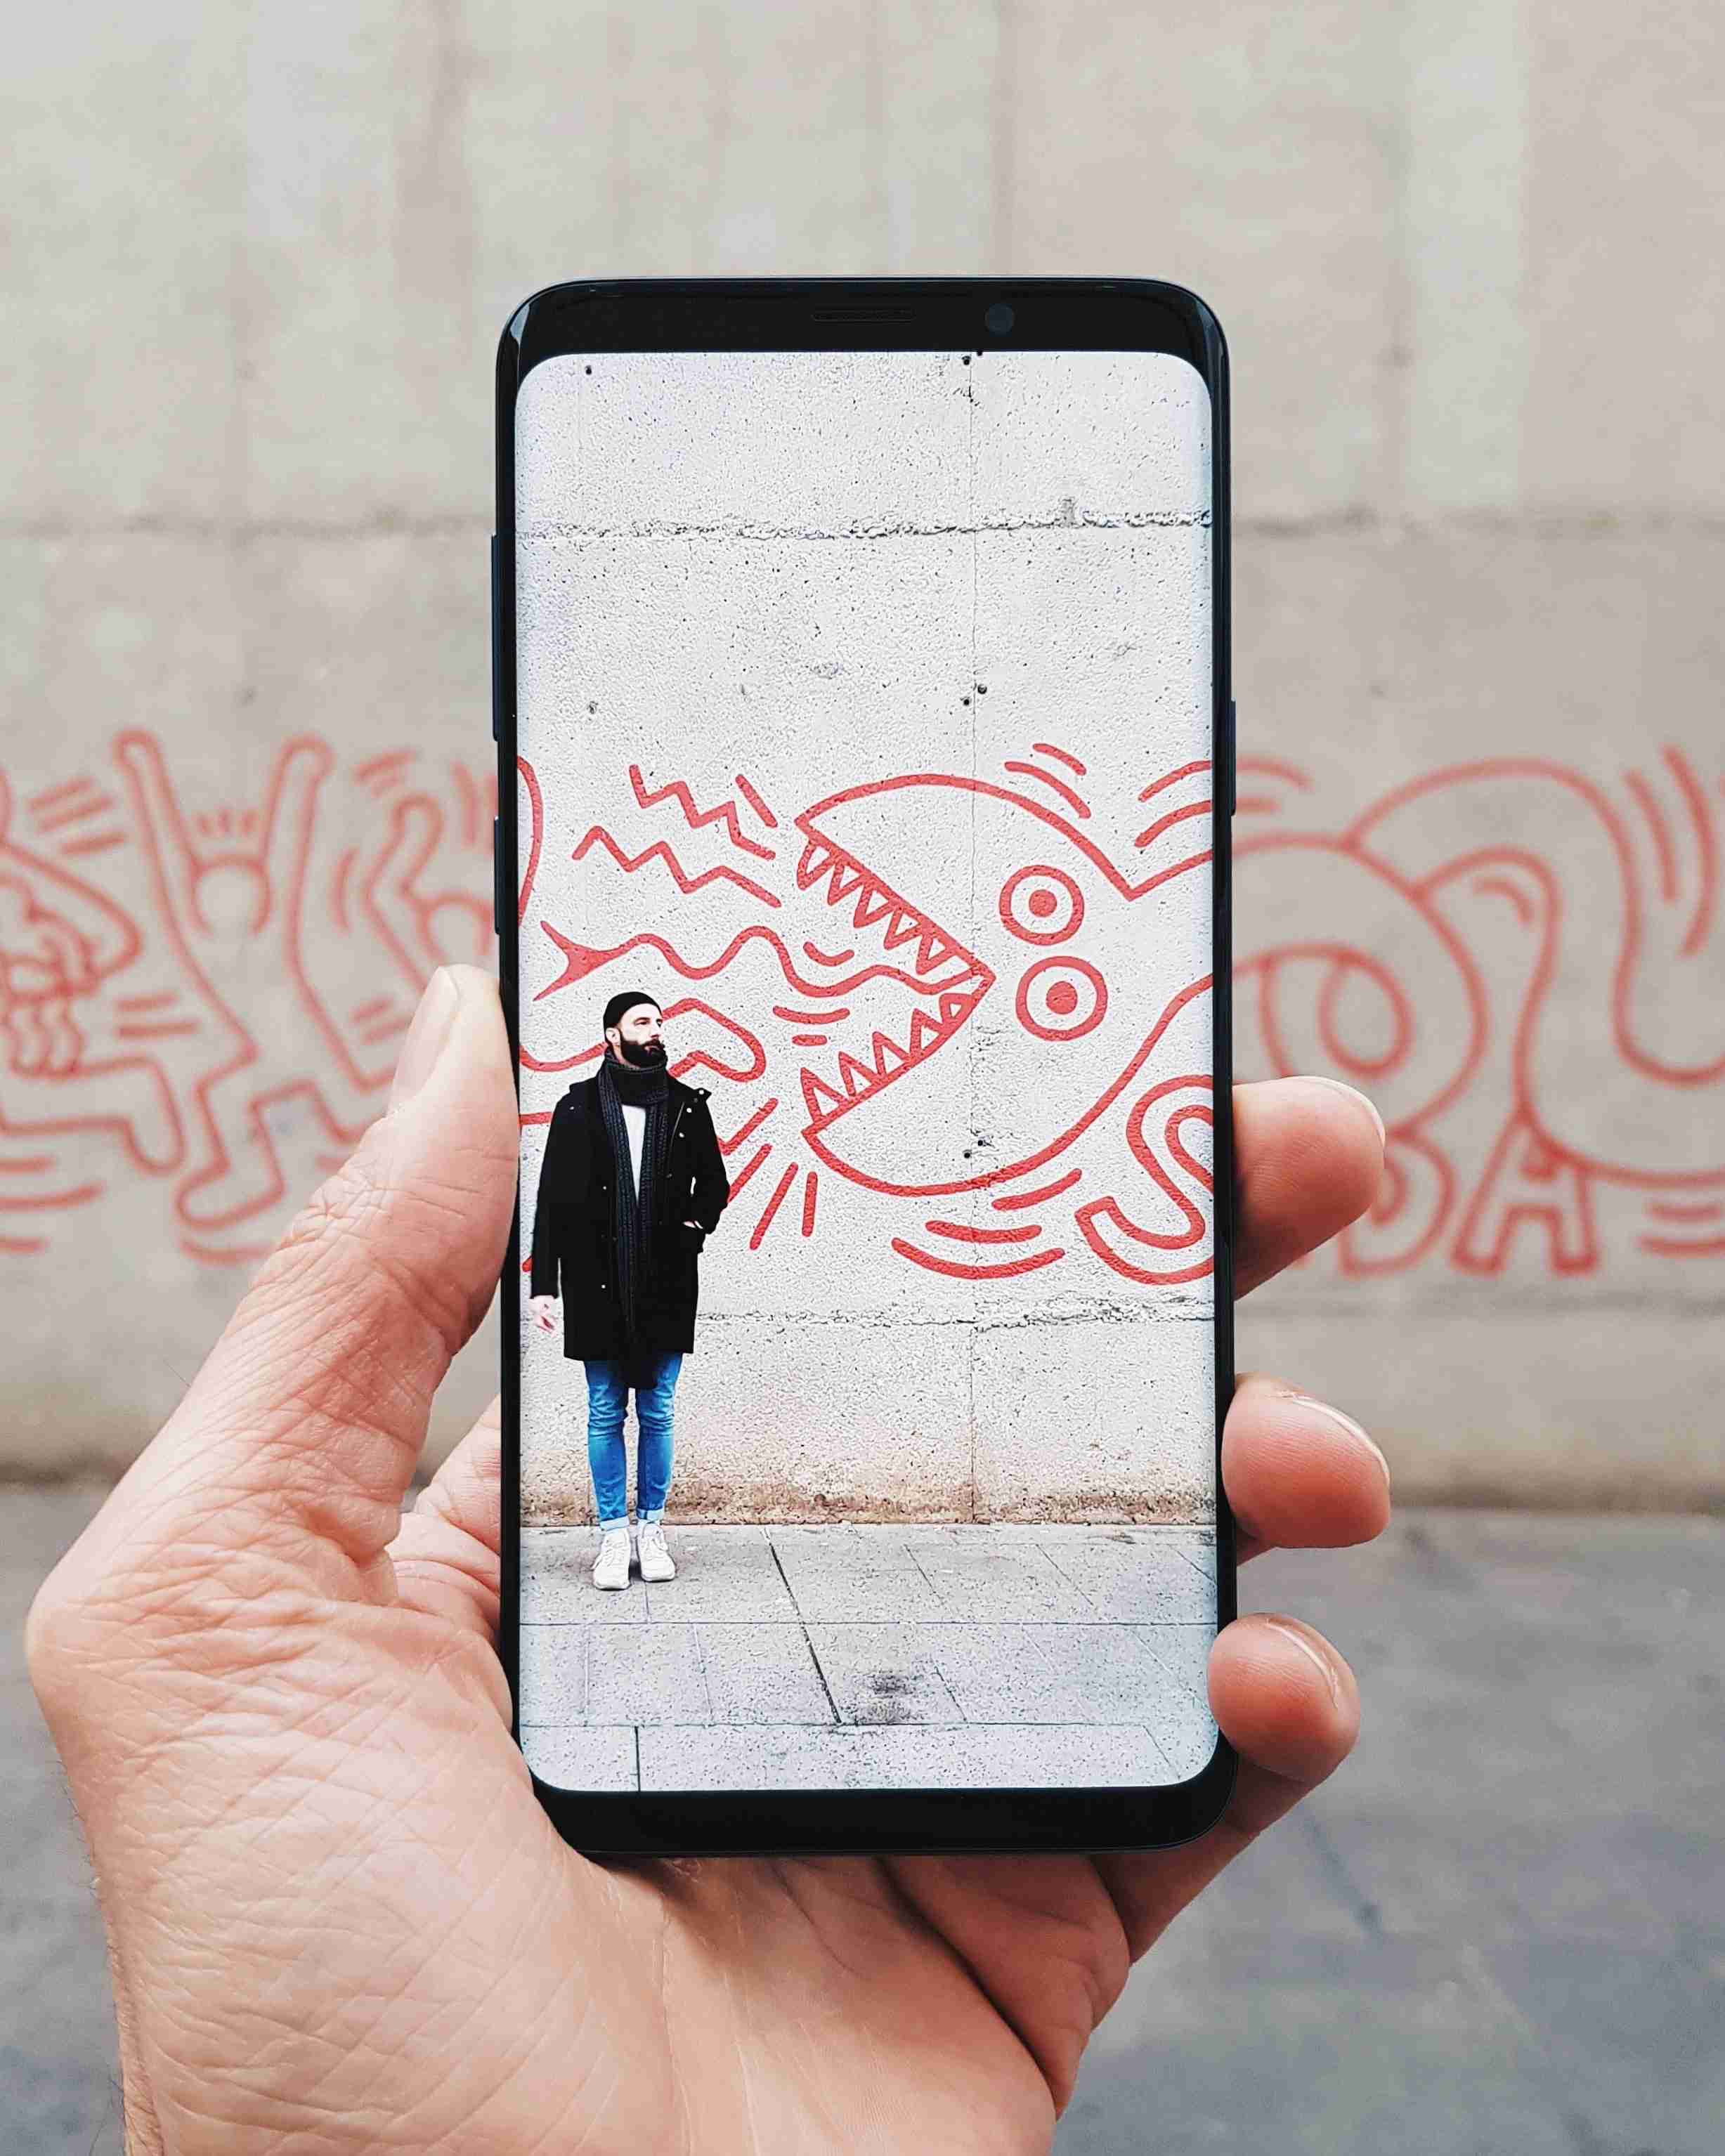 Foto von einem Handy auf dessen Bildschirm ein Mann bei einem Graffiti stehend zu sehen ist.